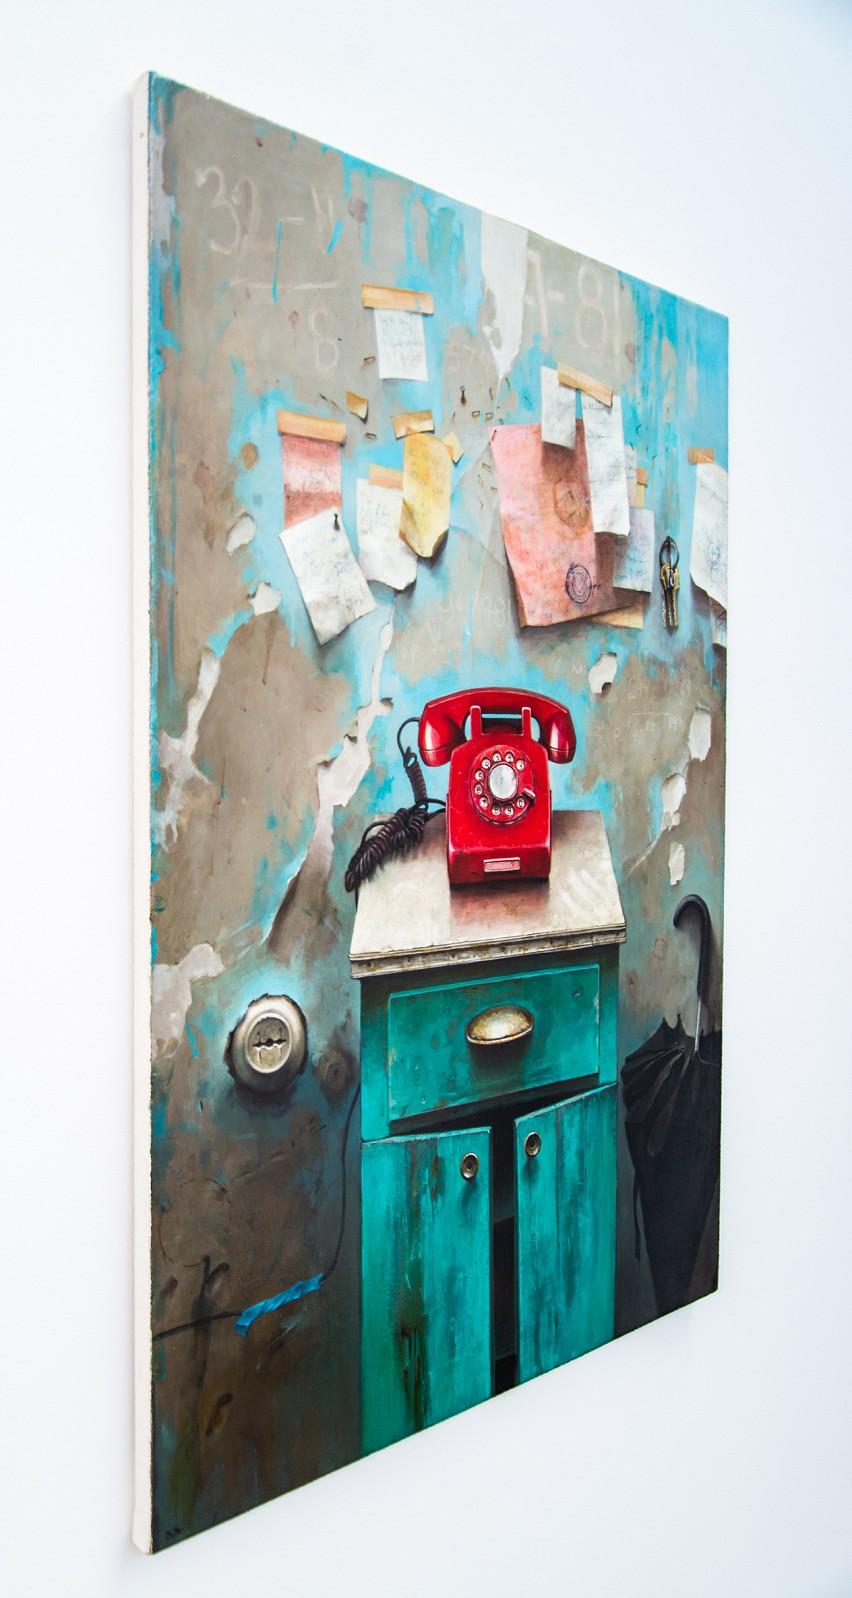 Red Phone – detailliert, realistisch, Interieur, ukrainisch, israelisch, Öl auf Leinwand (Zeitgenössisch), Painting, von Dmitry Yuzefovich